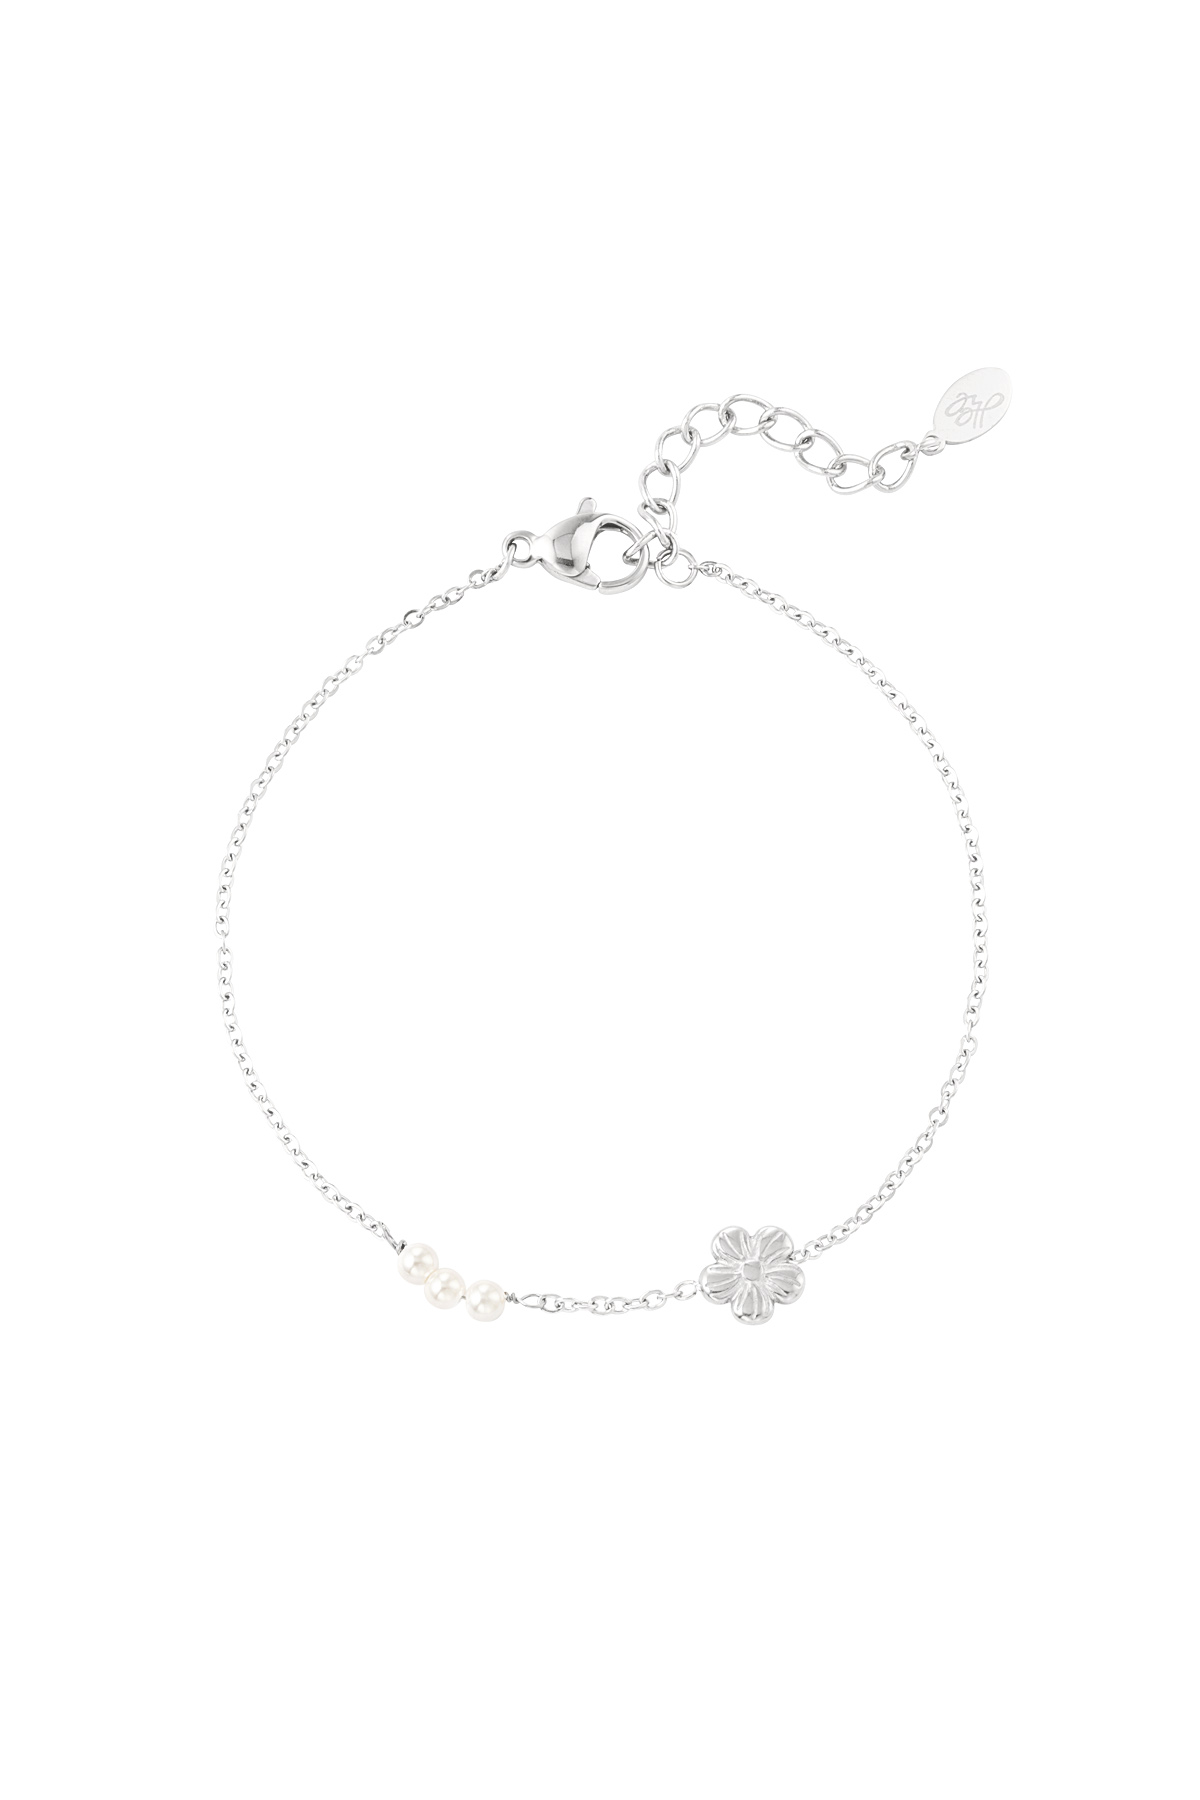 Armband Blume mit Perlen - Silber h5 